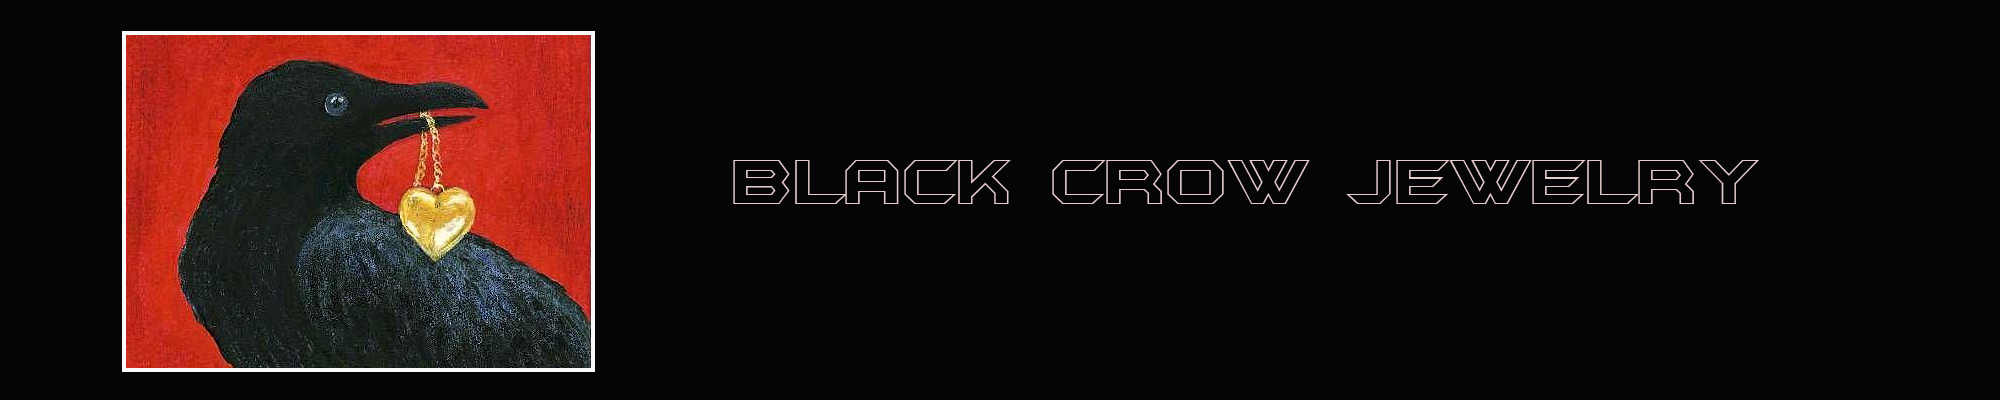 Black Crow Jewelry